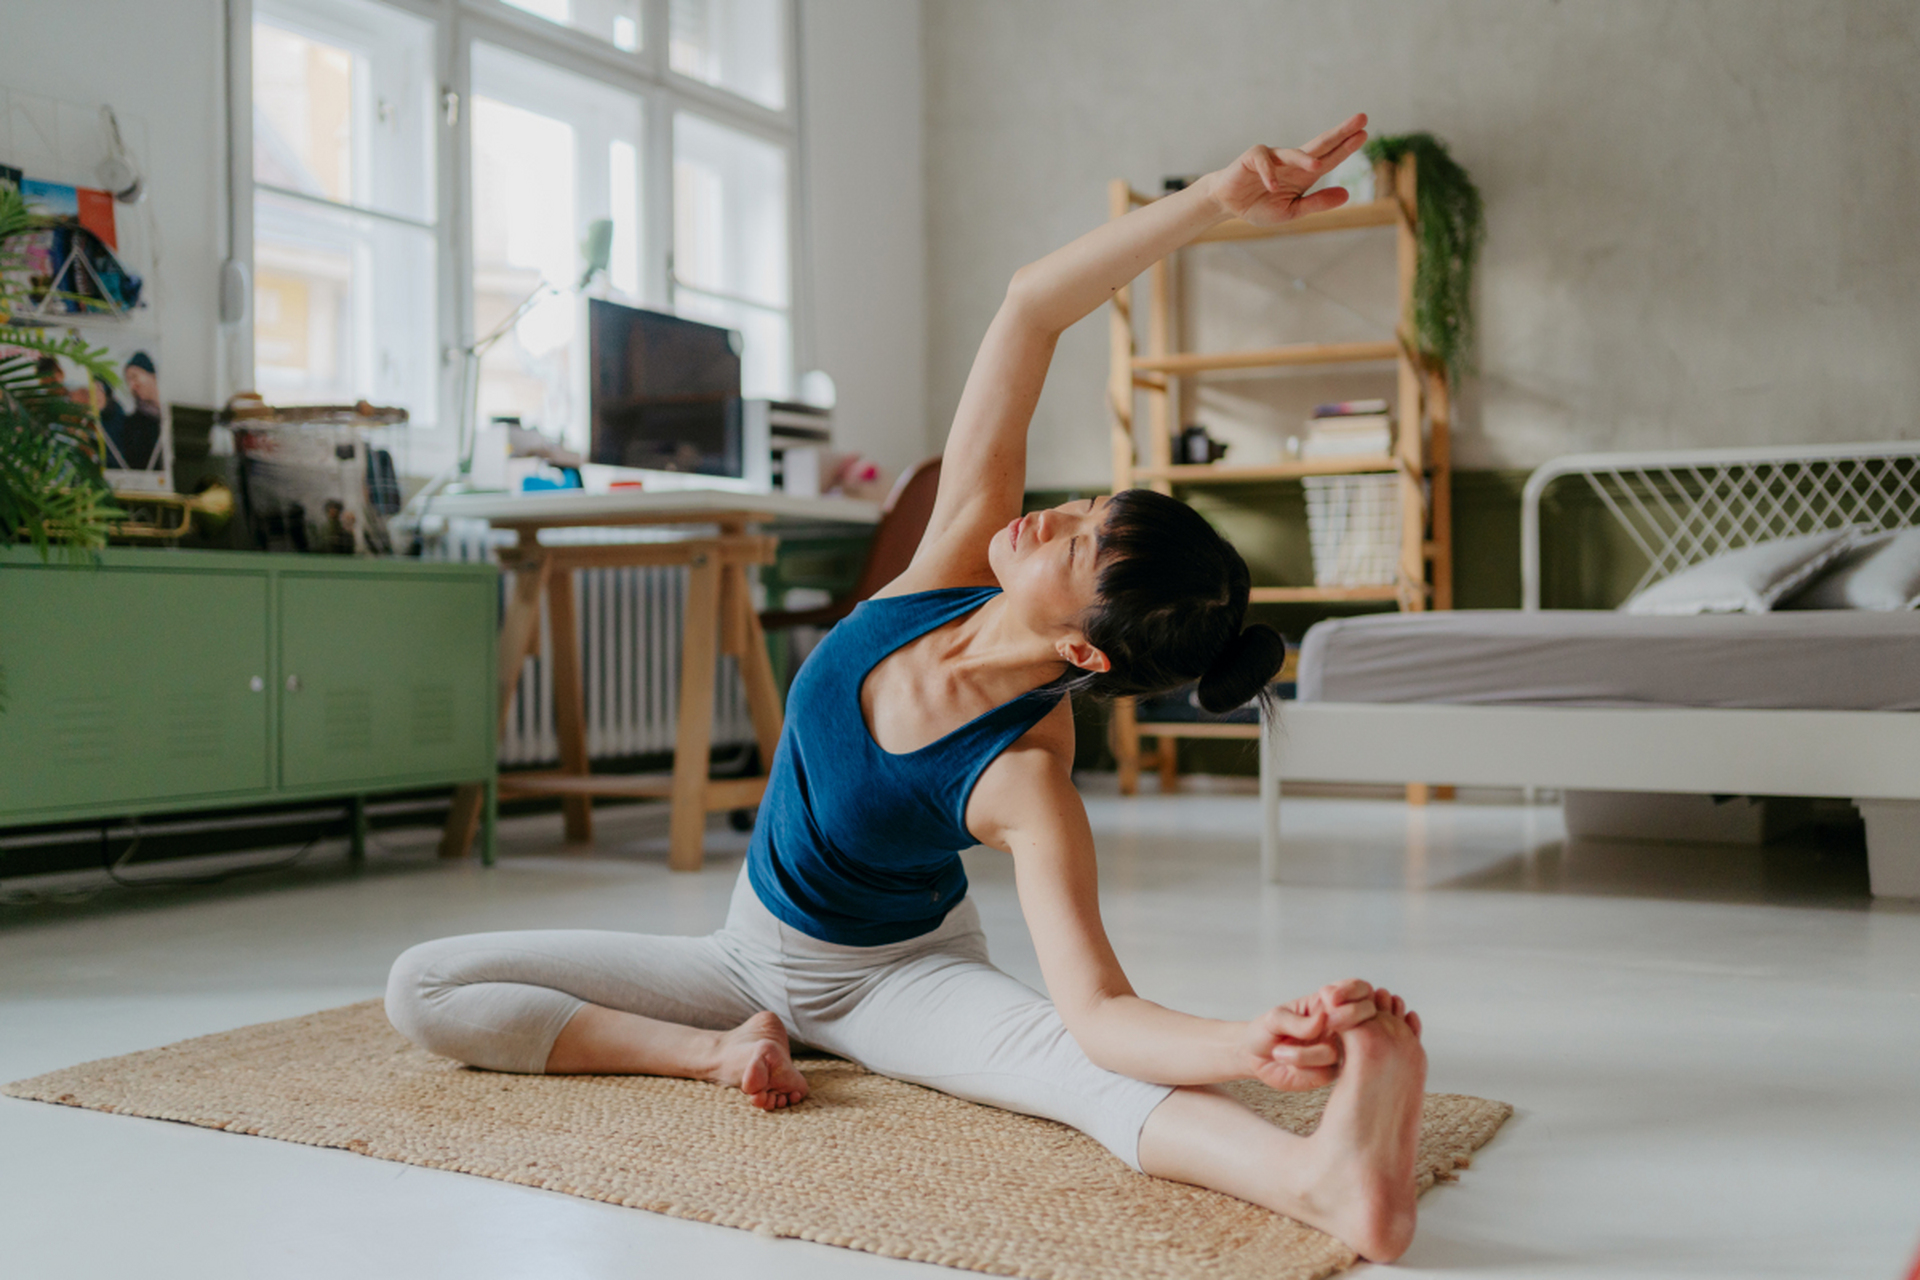 瑜伽的趴猫式是一种简单有效的体式,可缓解压力,增强核心肌群和脊椎